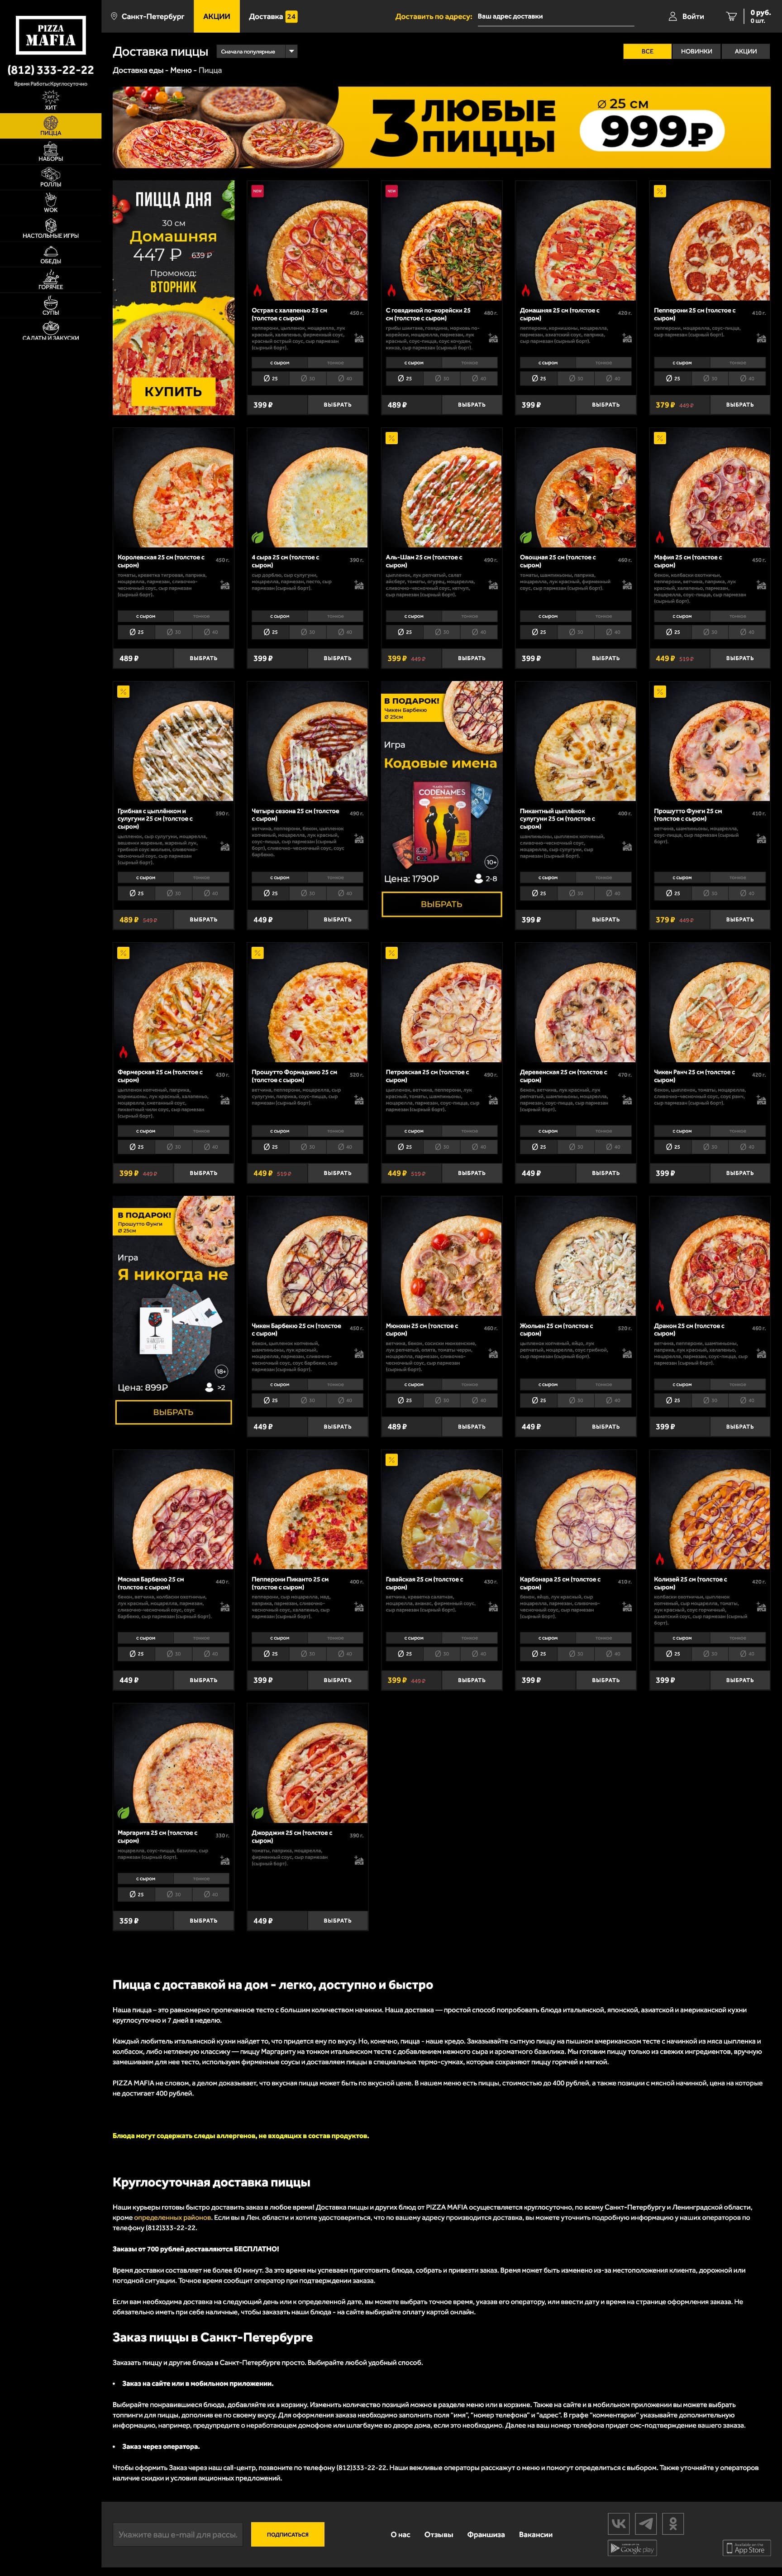 Пример посадочной страницы сайта для пиццерии